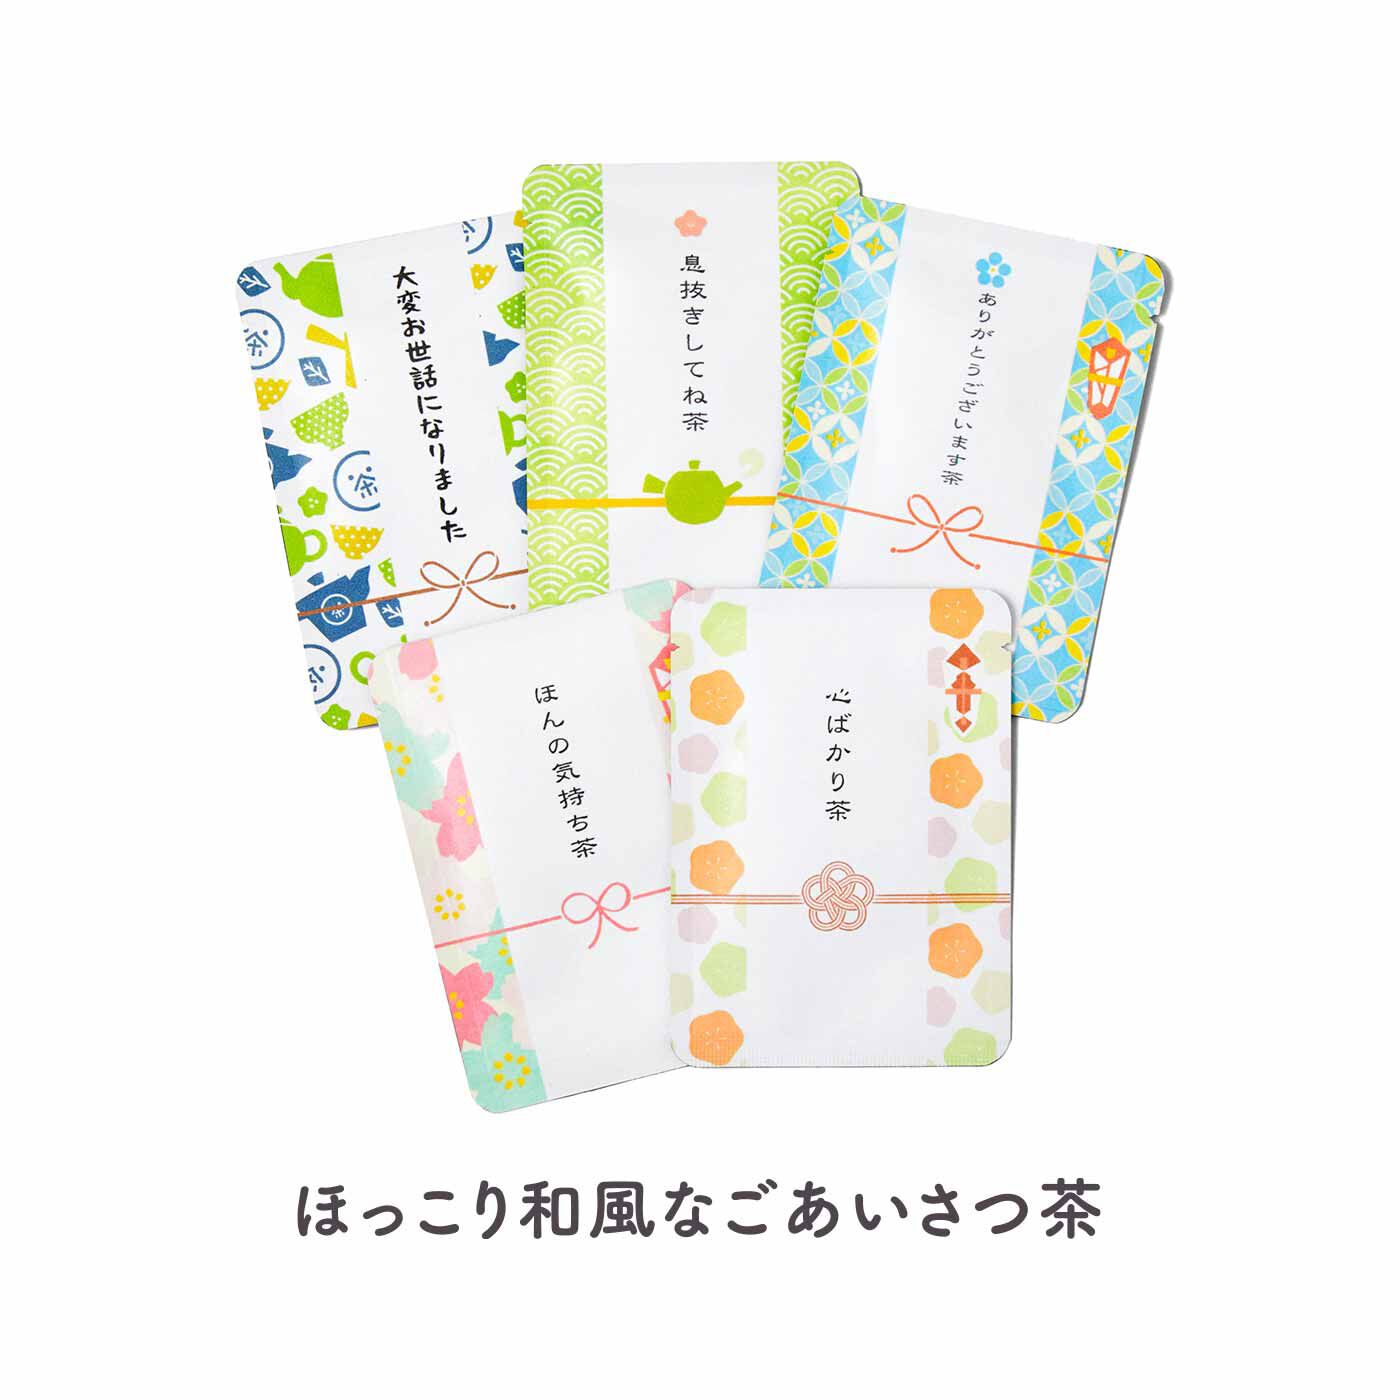 FELISSIMO PARTNERS|あなたに、私に お茶であいさつ 京のごえん茶の会（6回予約）|ご祝儀袋風のデザインに5つのメッセージを添えて。京の玉露が入っています。